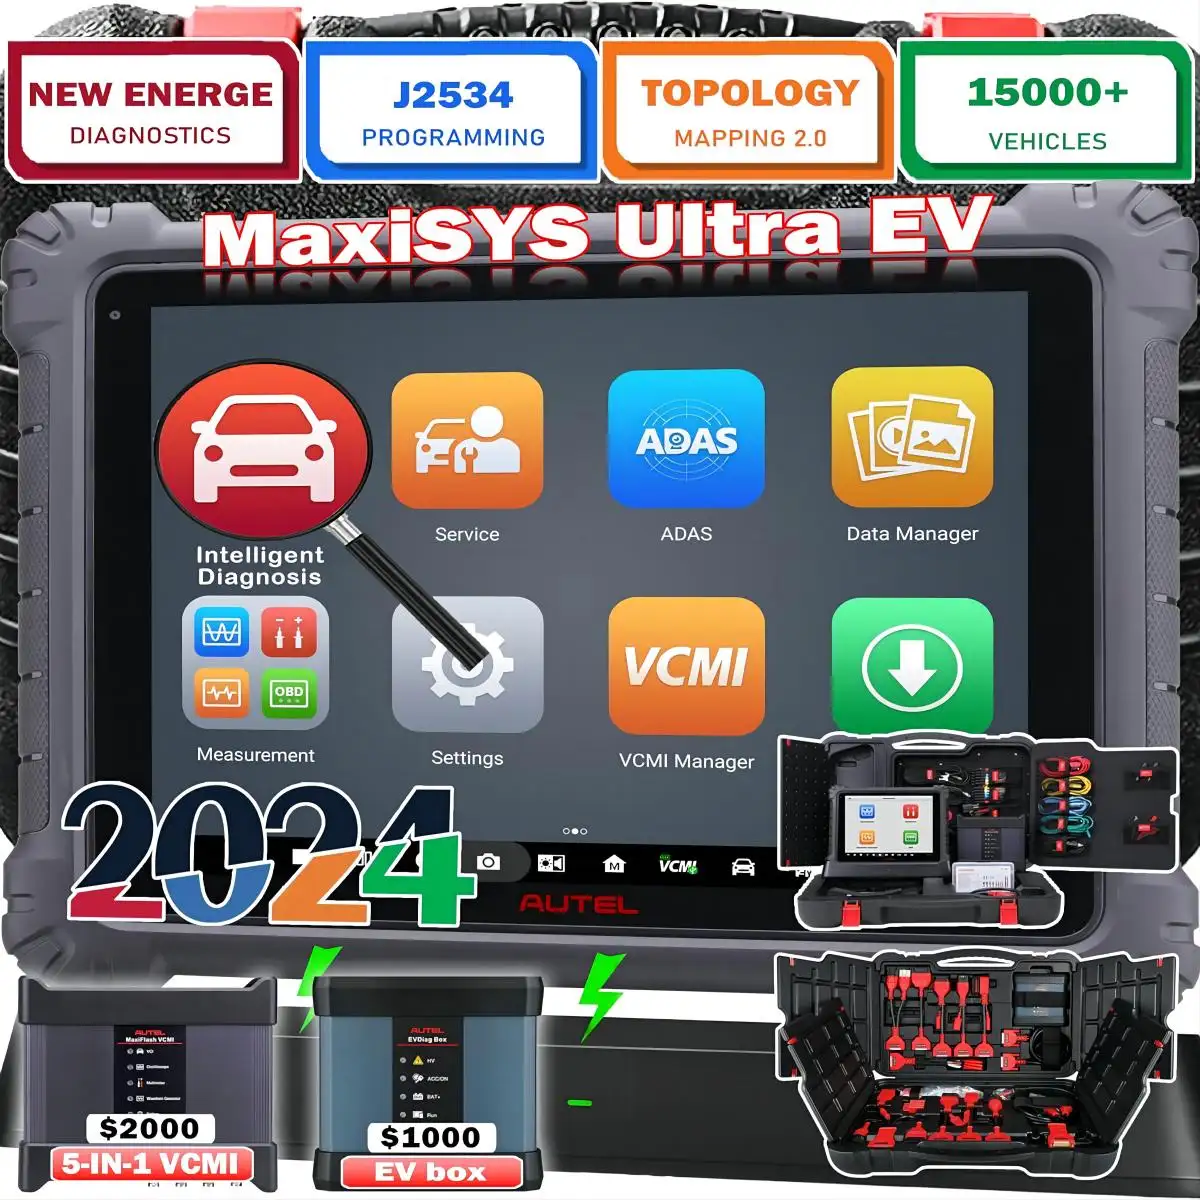 Autel maxisys professionale ultra ev mk908 ecu programma programmabile kit diagnostico auto elettrico ad alta tensione scanner automotriz